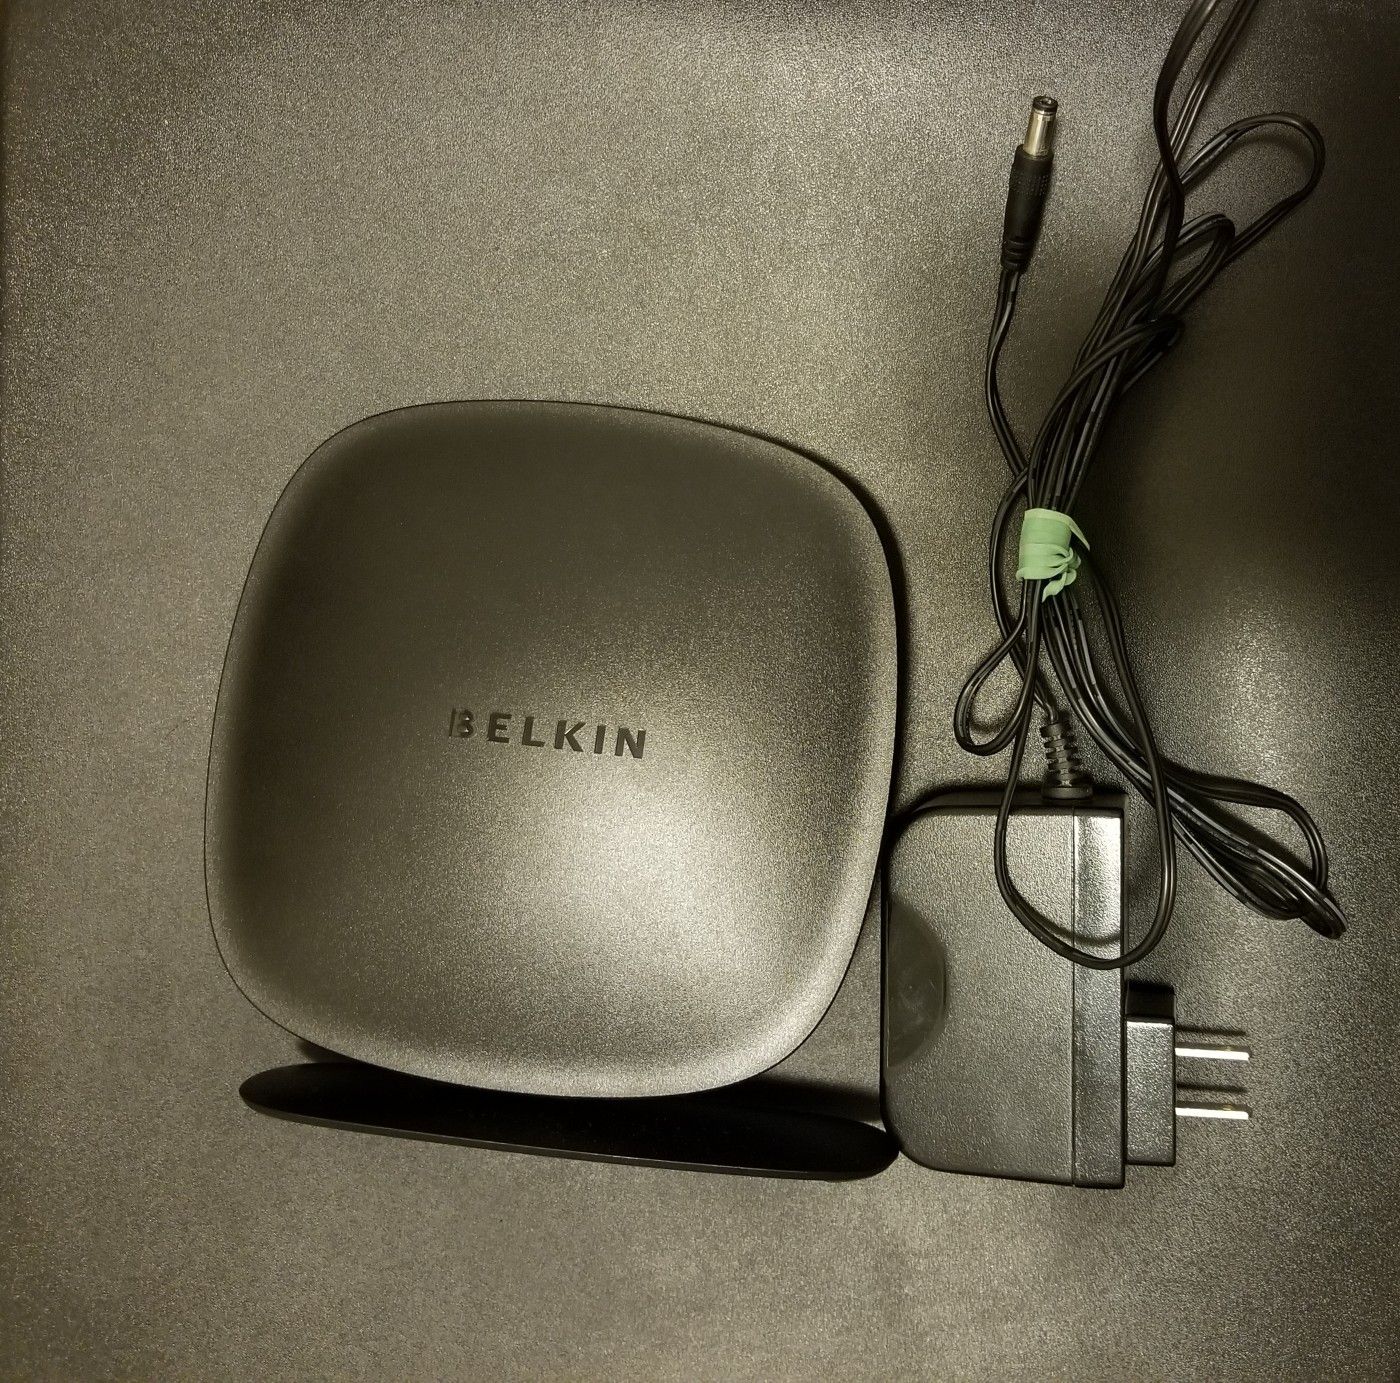 Belkin N300 Wireless N Router